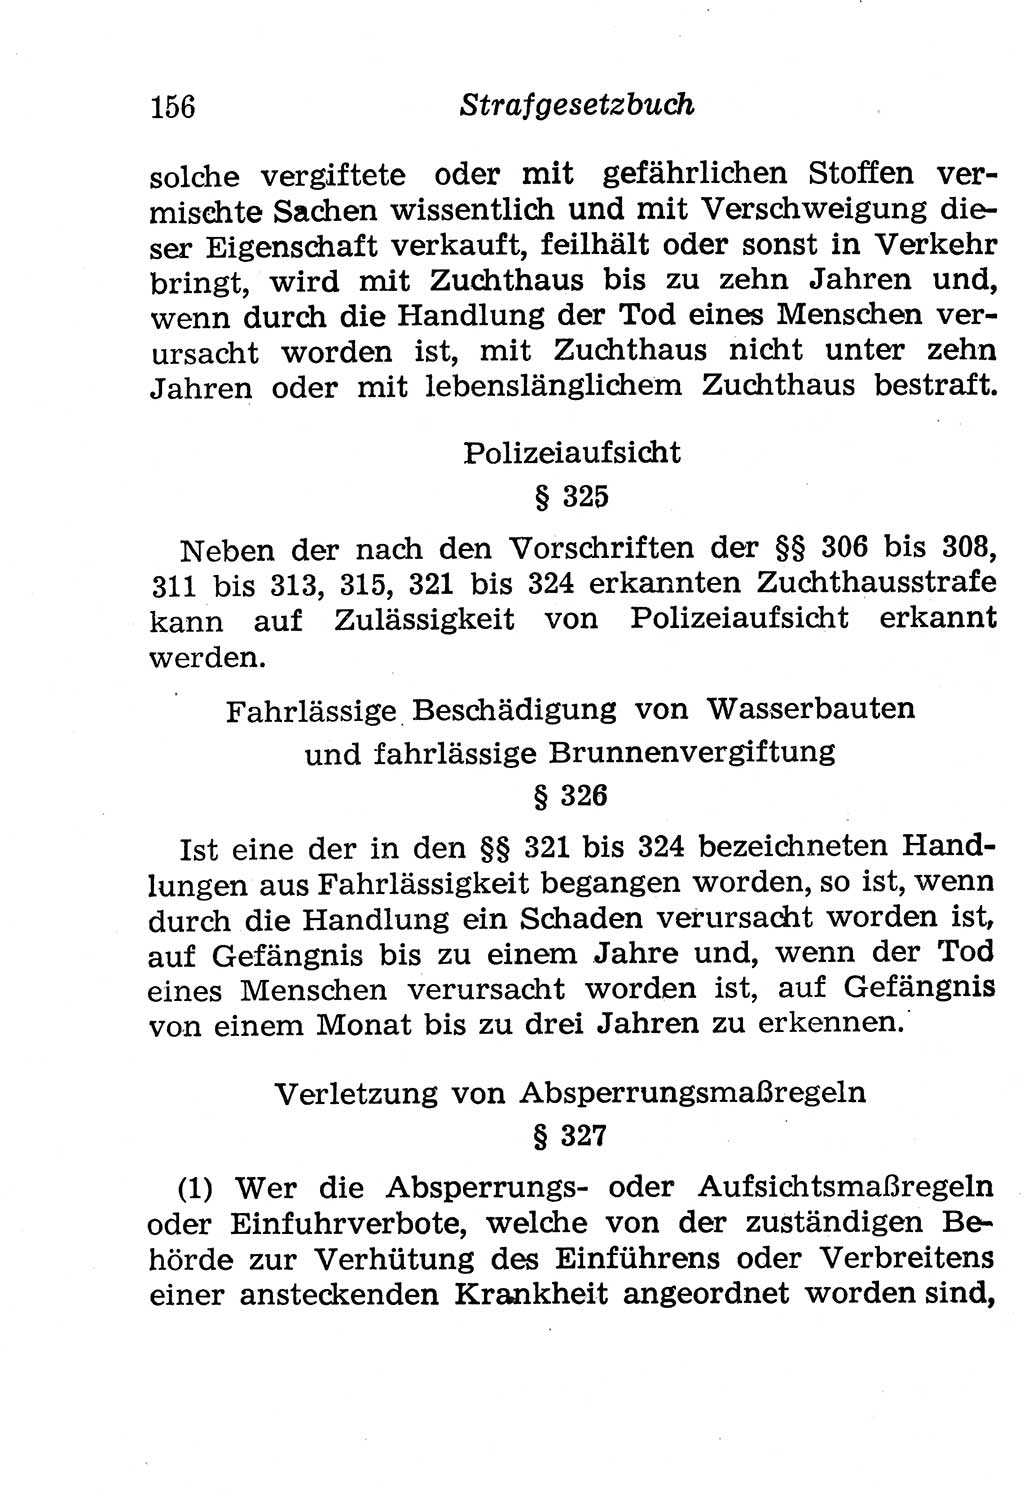 Strafgesetzbuch (StGB) und andere Strafgesetze [Deutsche Demokratische Republik (DDR)] 1958, Seite 156 (StGB Strafges. DDR 1958, S. 156)